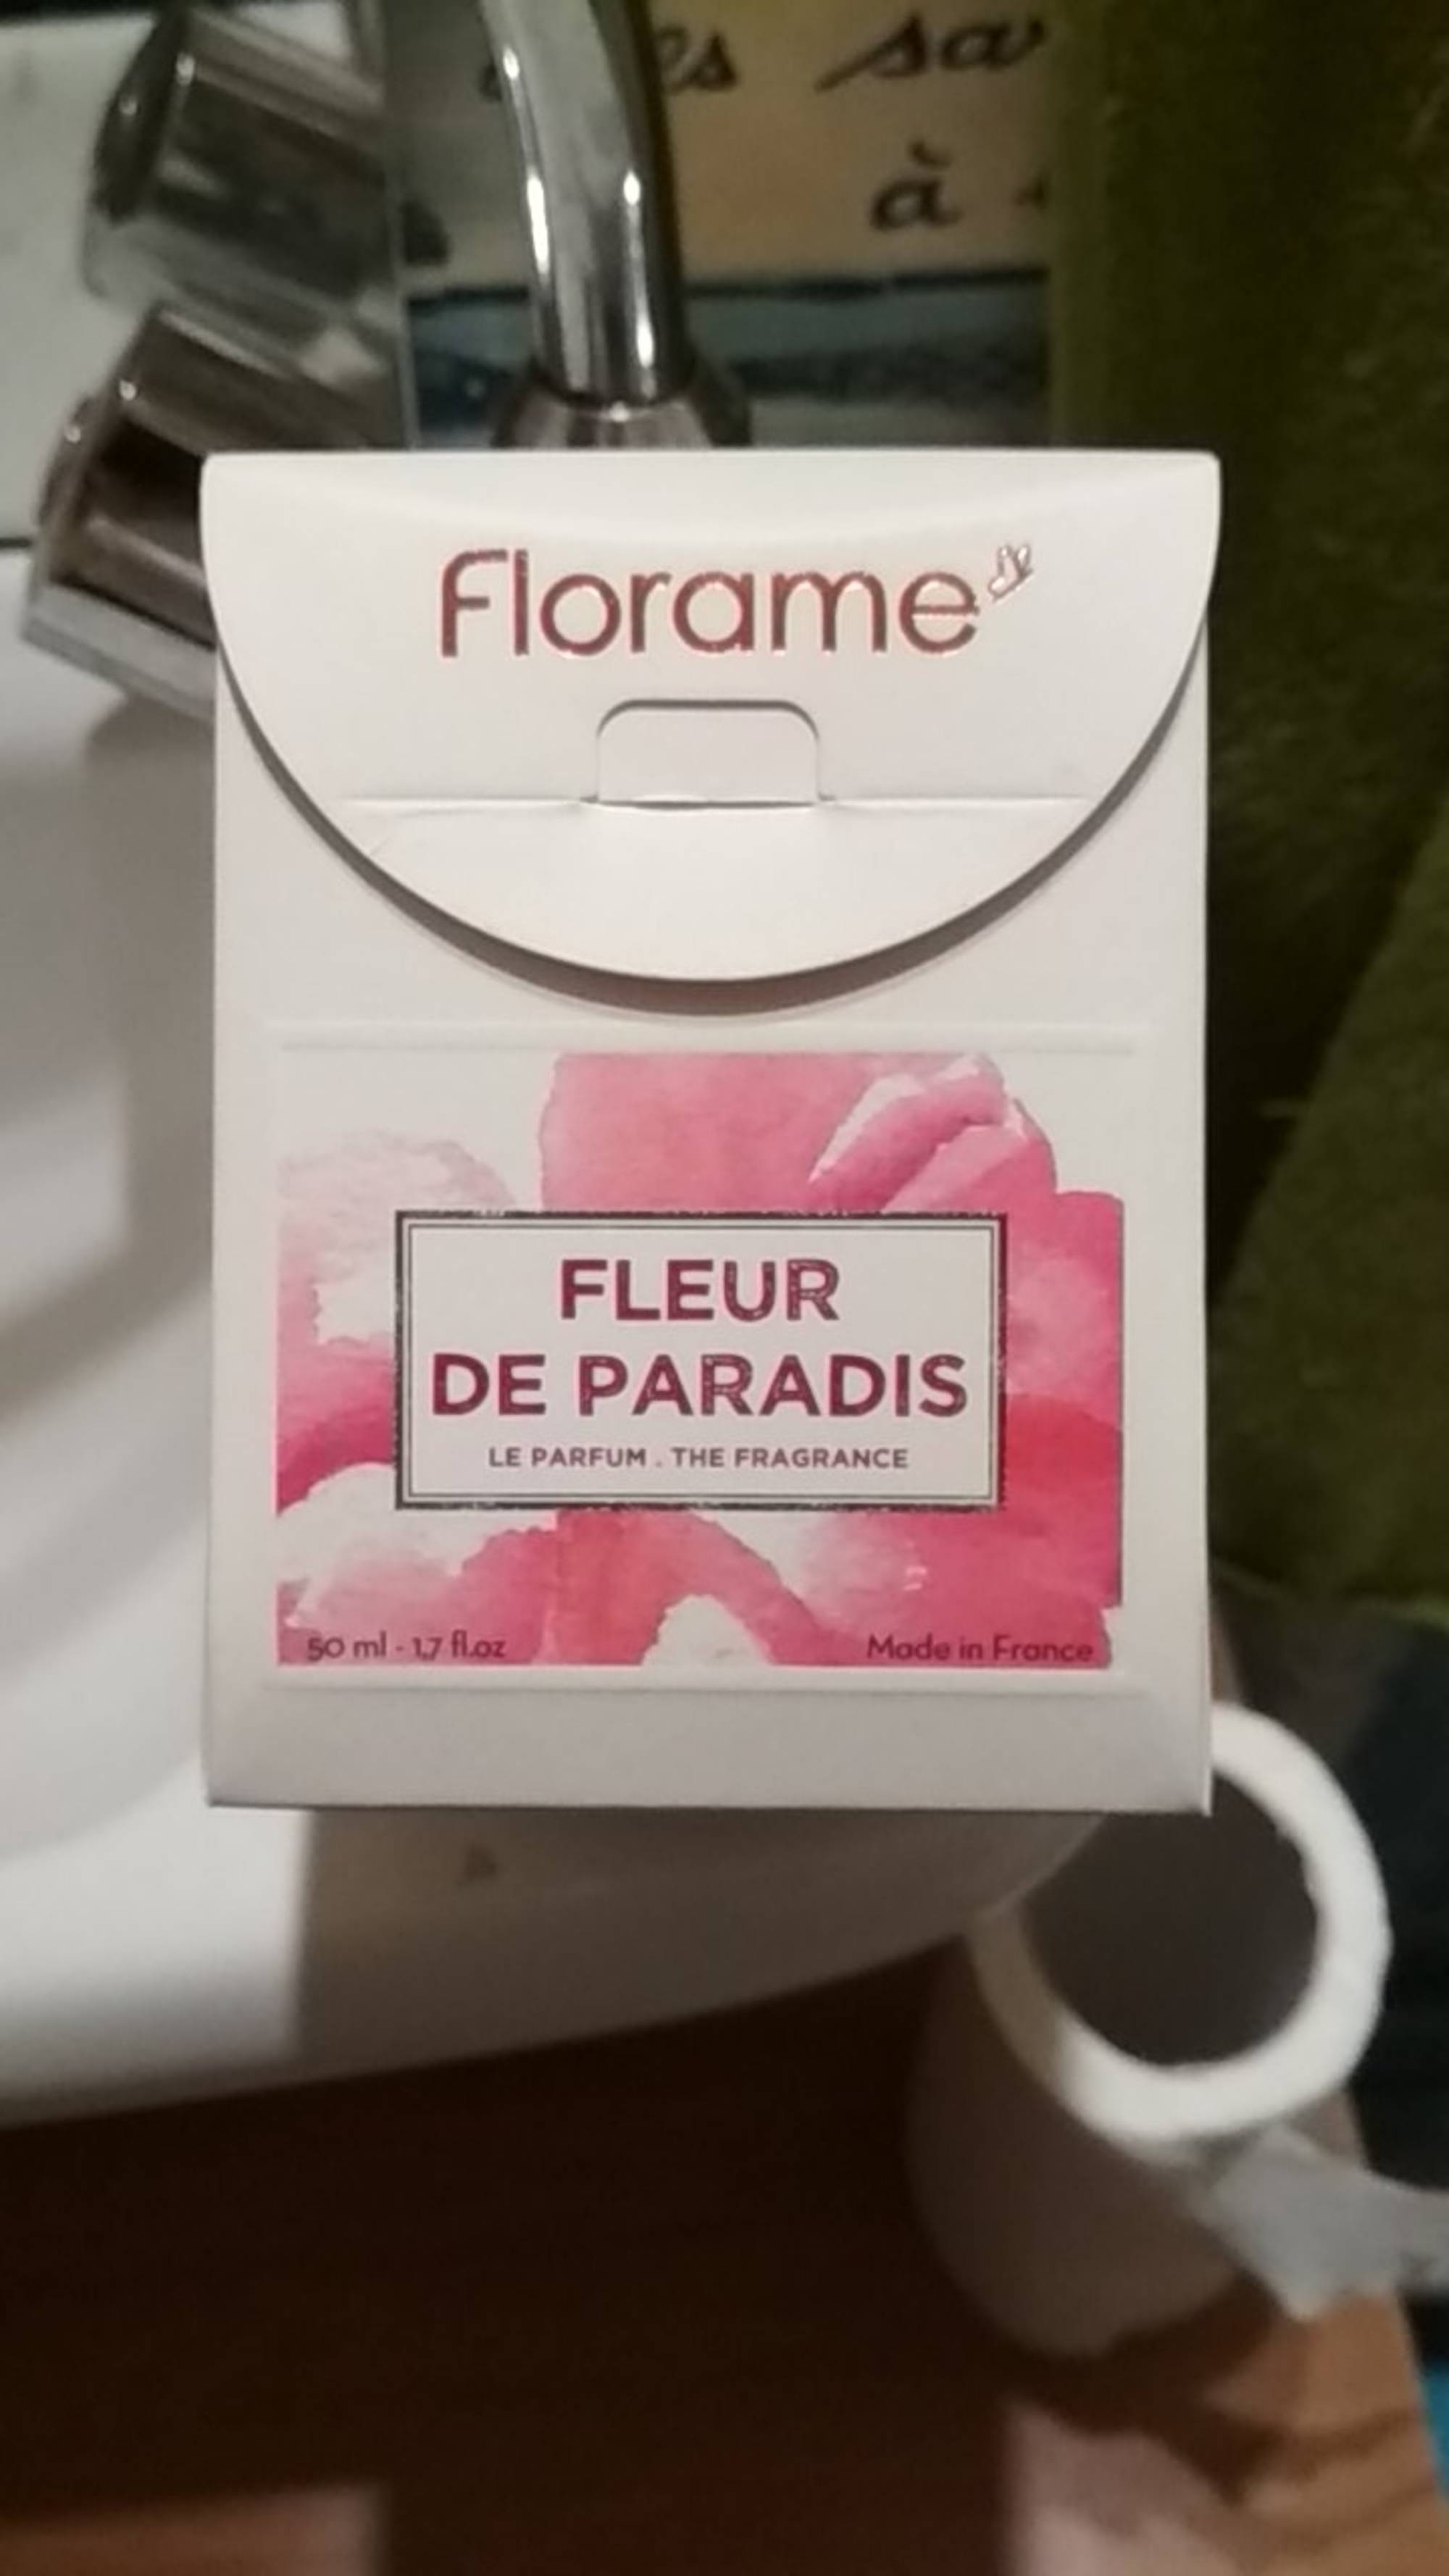 FLORAME - Fleur de paradis - Le parfum